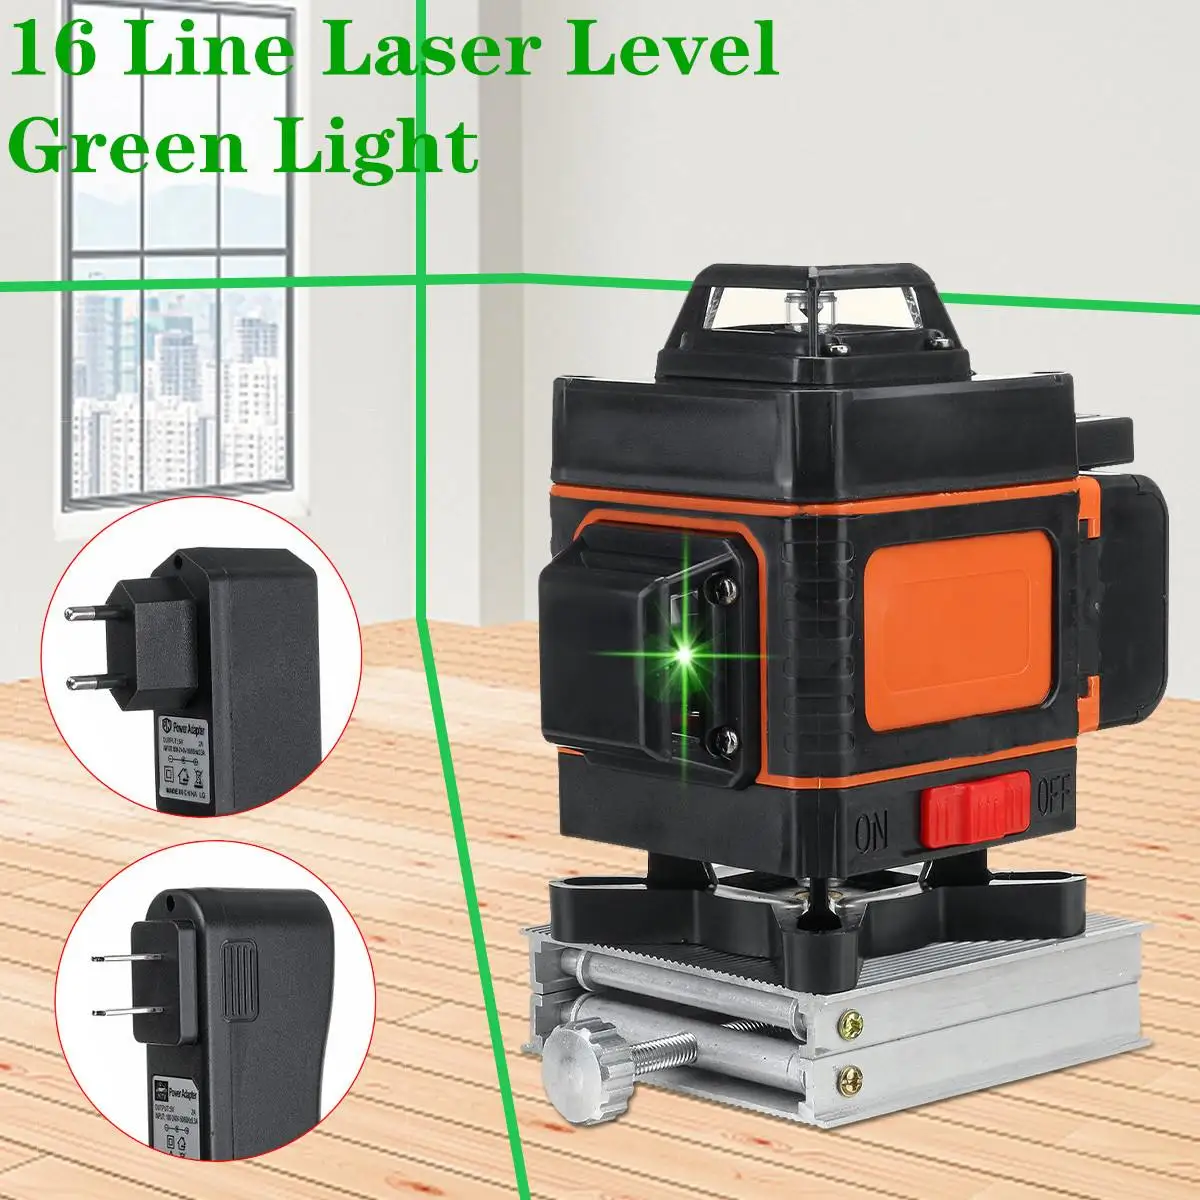 16 Linija Laserski Razinu 4D Zeleno Svjetlo Led Zaslon Automatski Самовыравнивание 360 ° Okretni Mjerenje Vodoravno Okomito Križ Daljinsko Upravljanje Slika 1